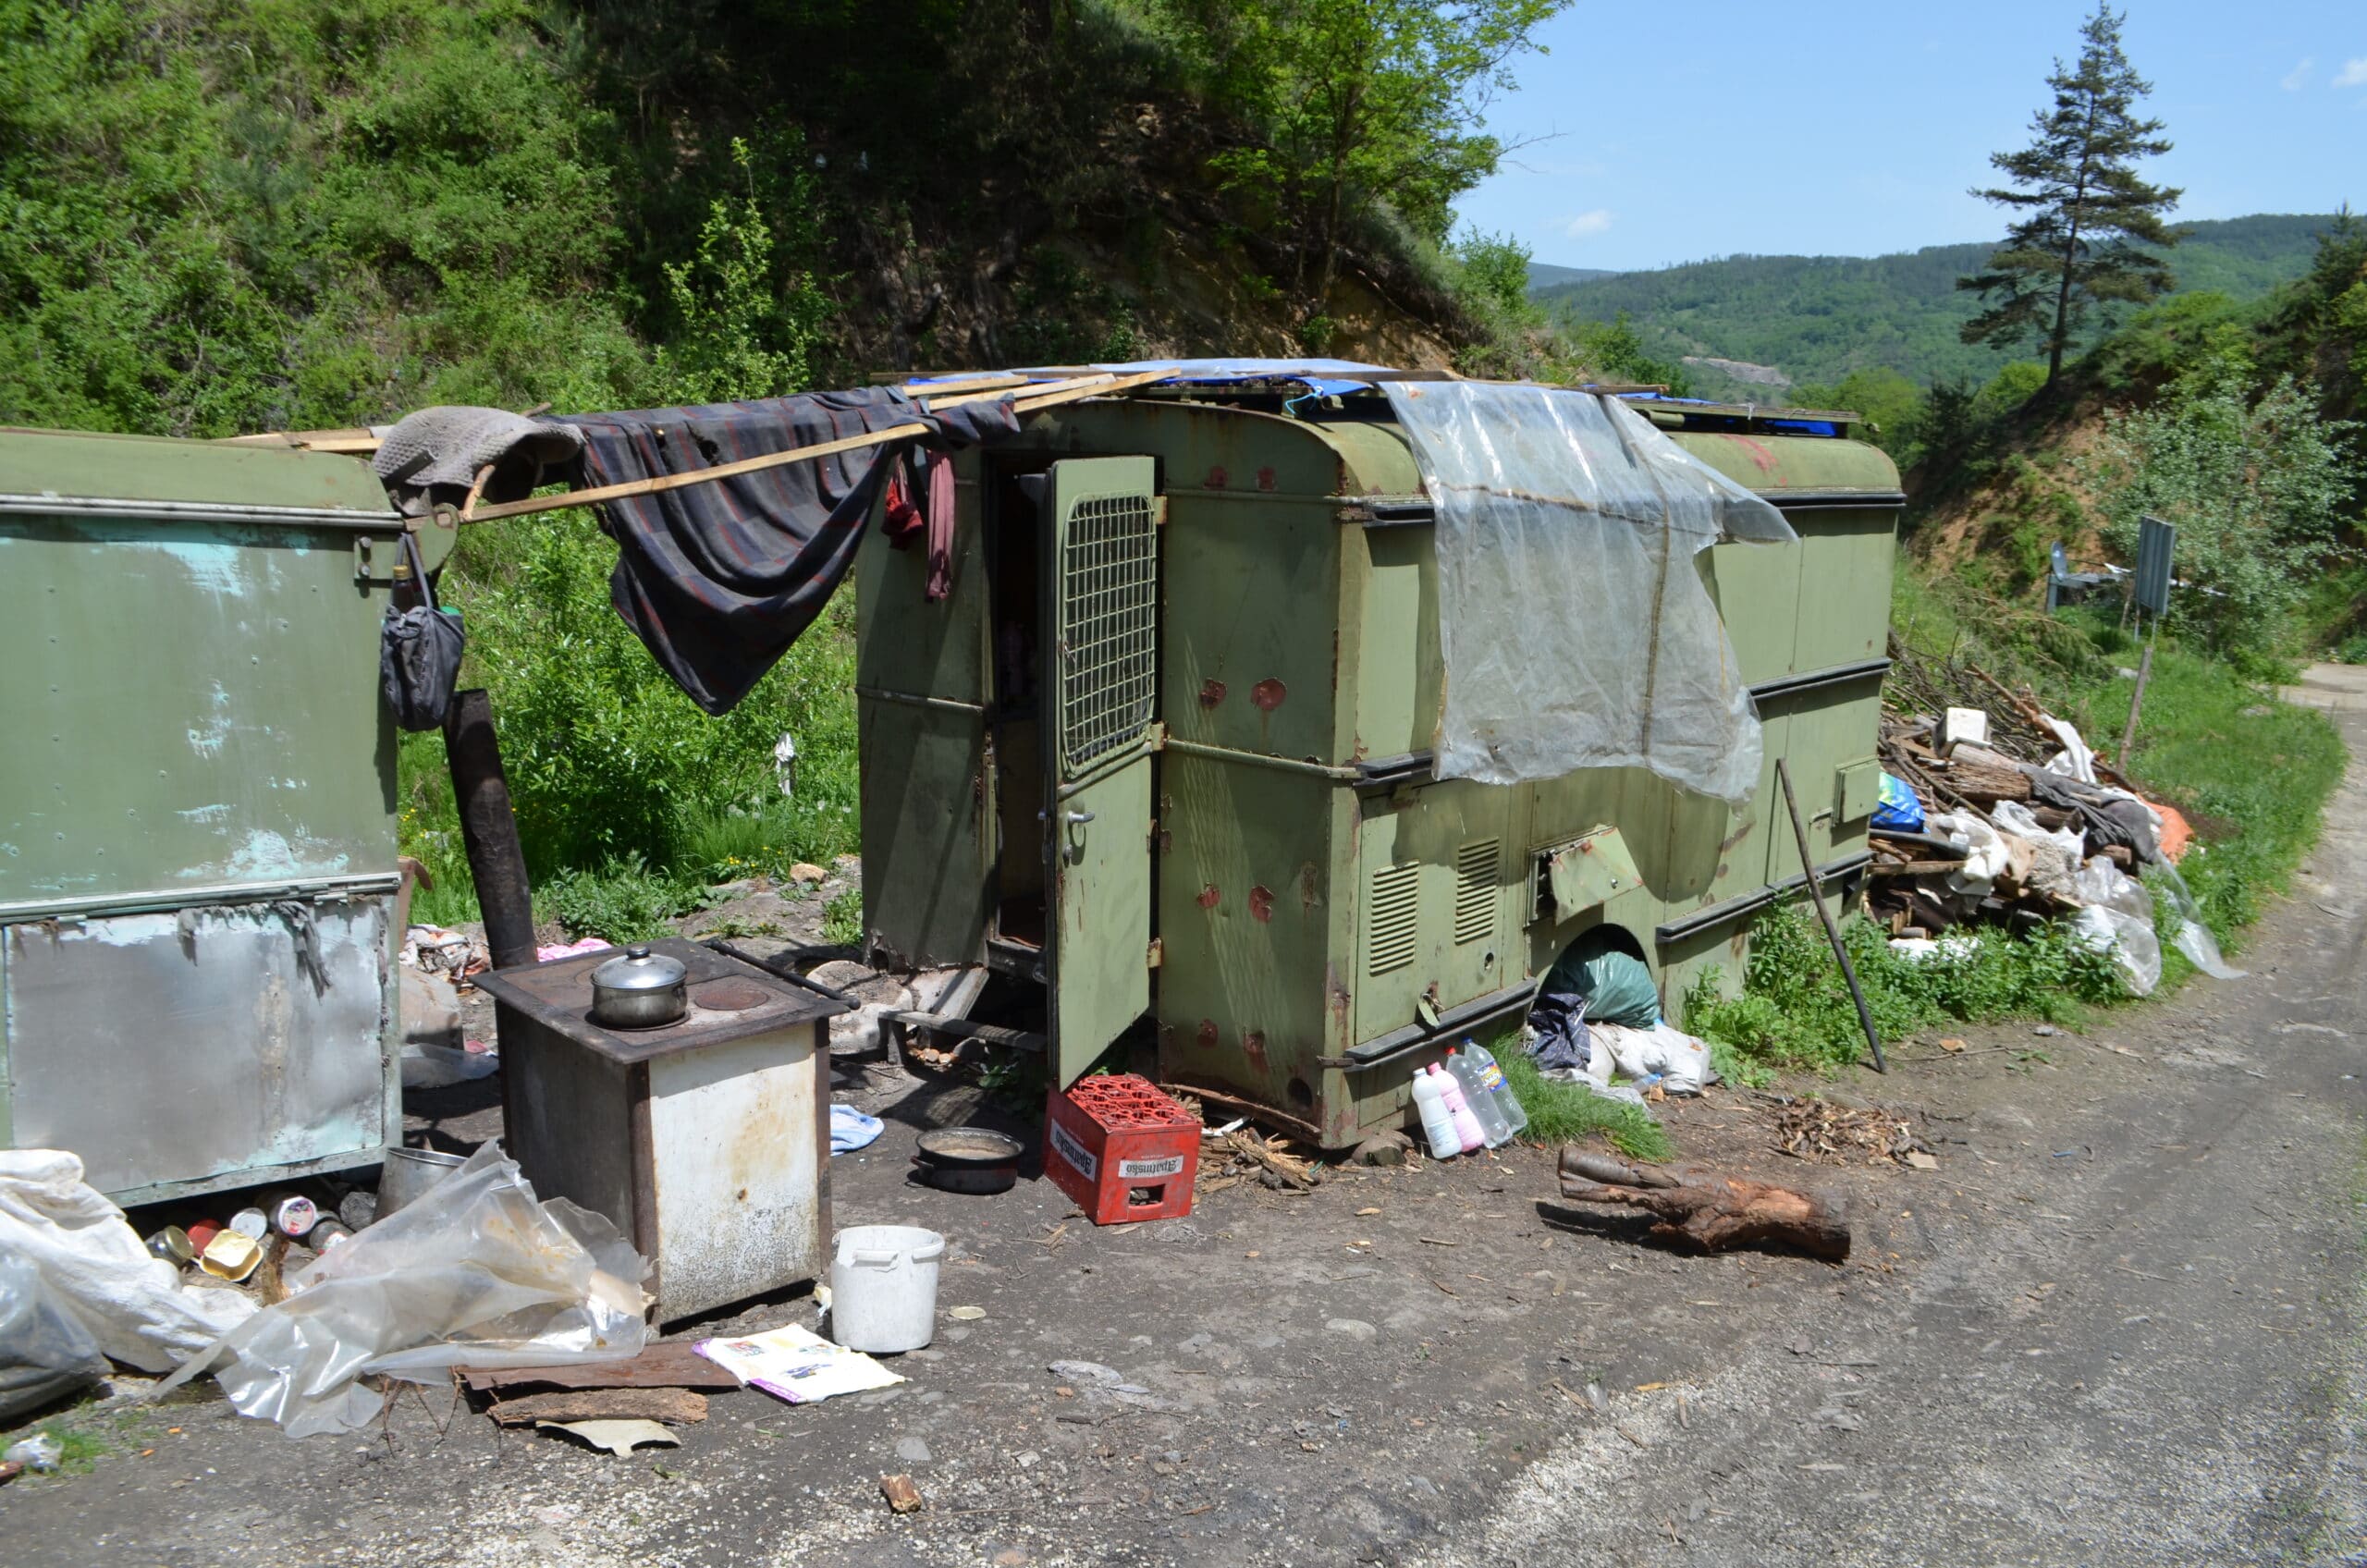 "Da me hoće Gospod pa da umrem, da se ne mučim više": Život u bedi meštana Laloša, nedaleko od Bosilegrada, najvećem getu u Srbiji 2